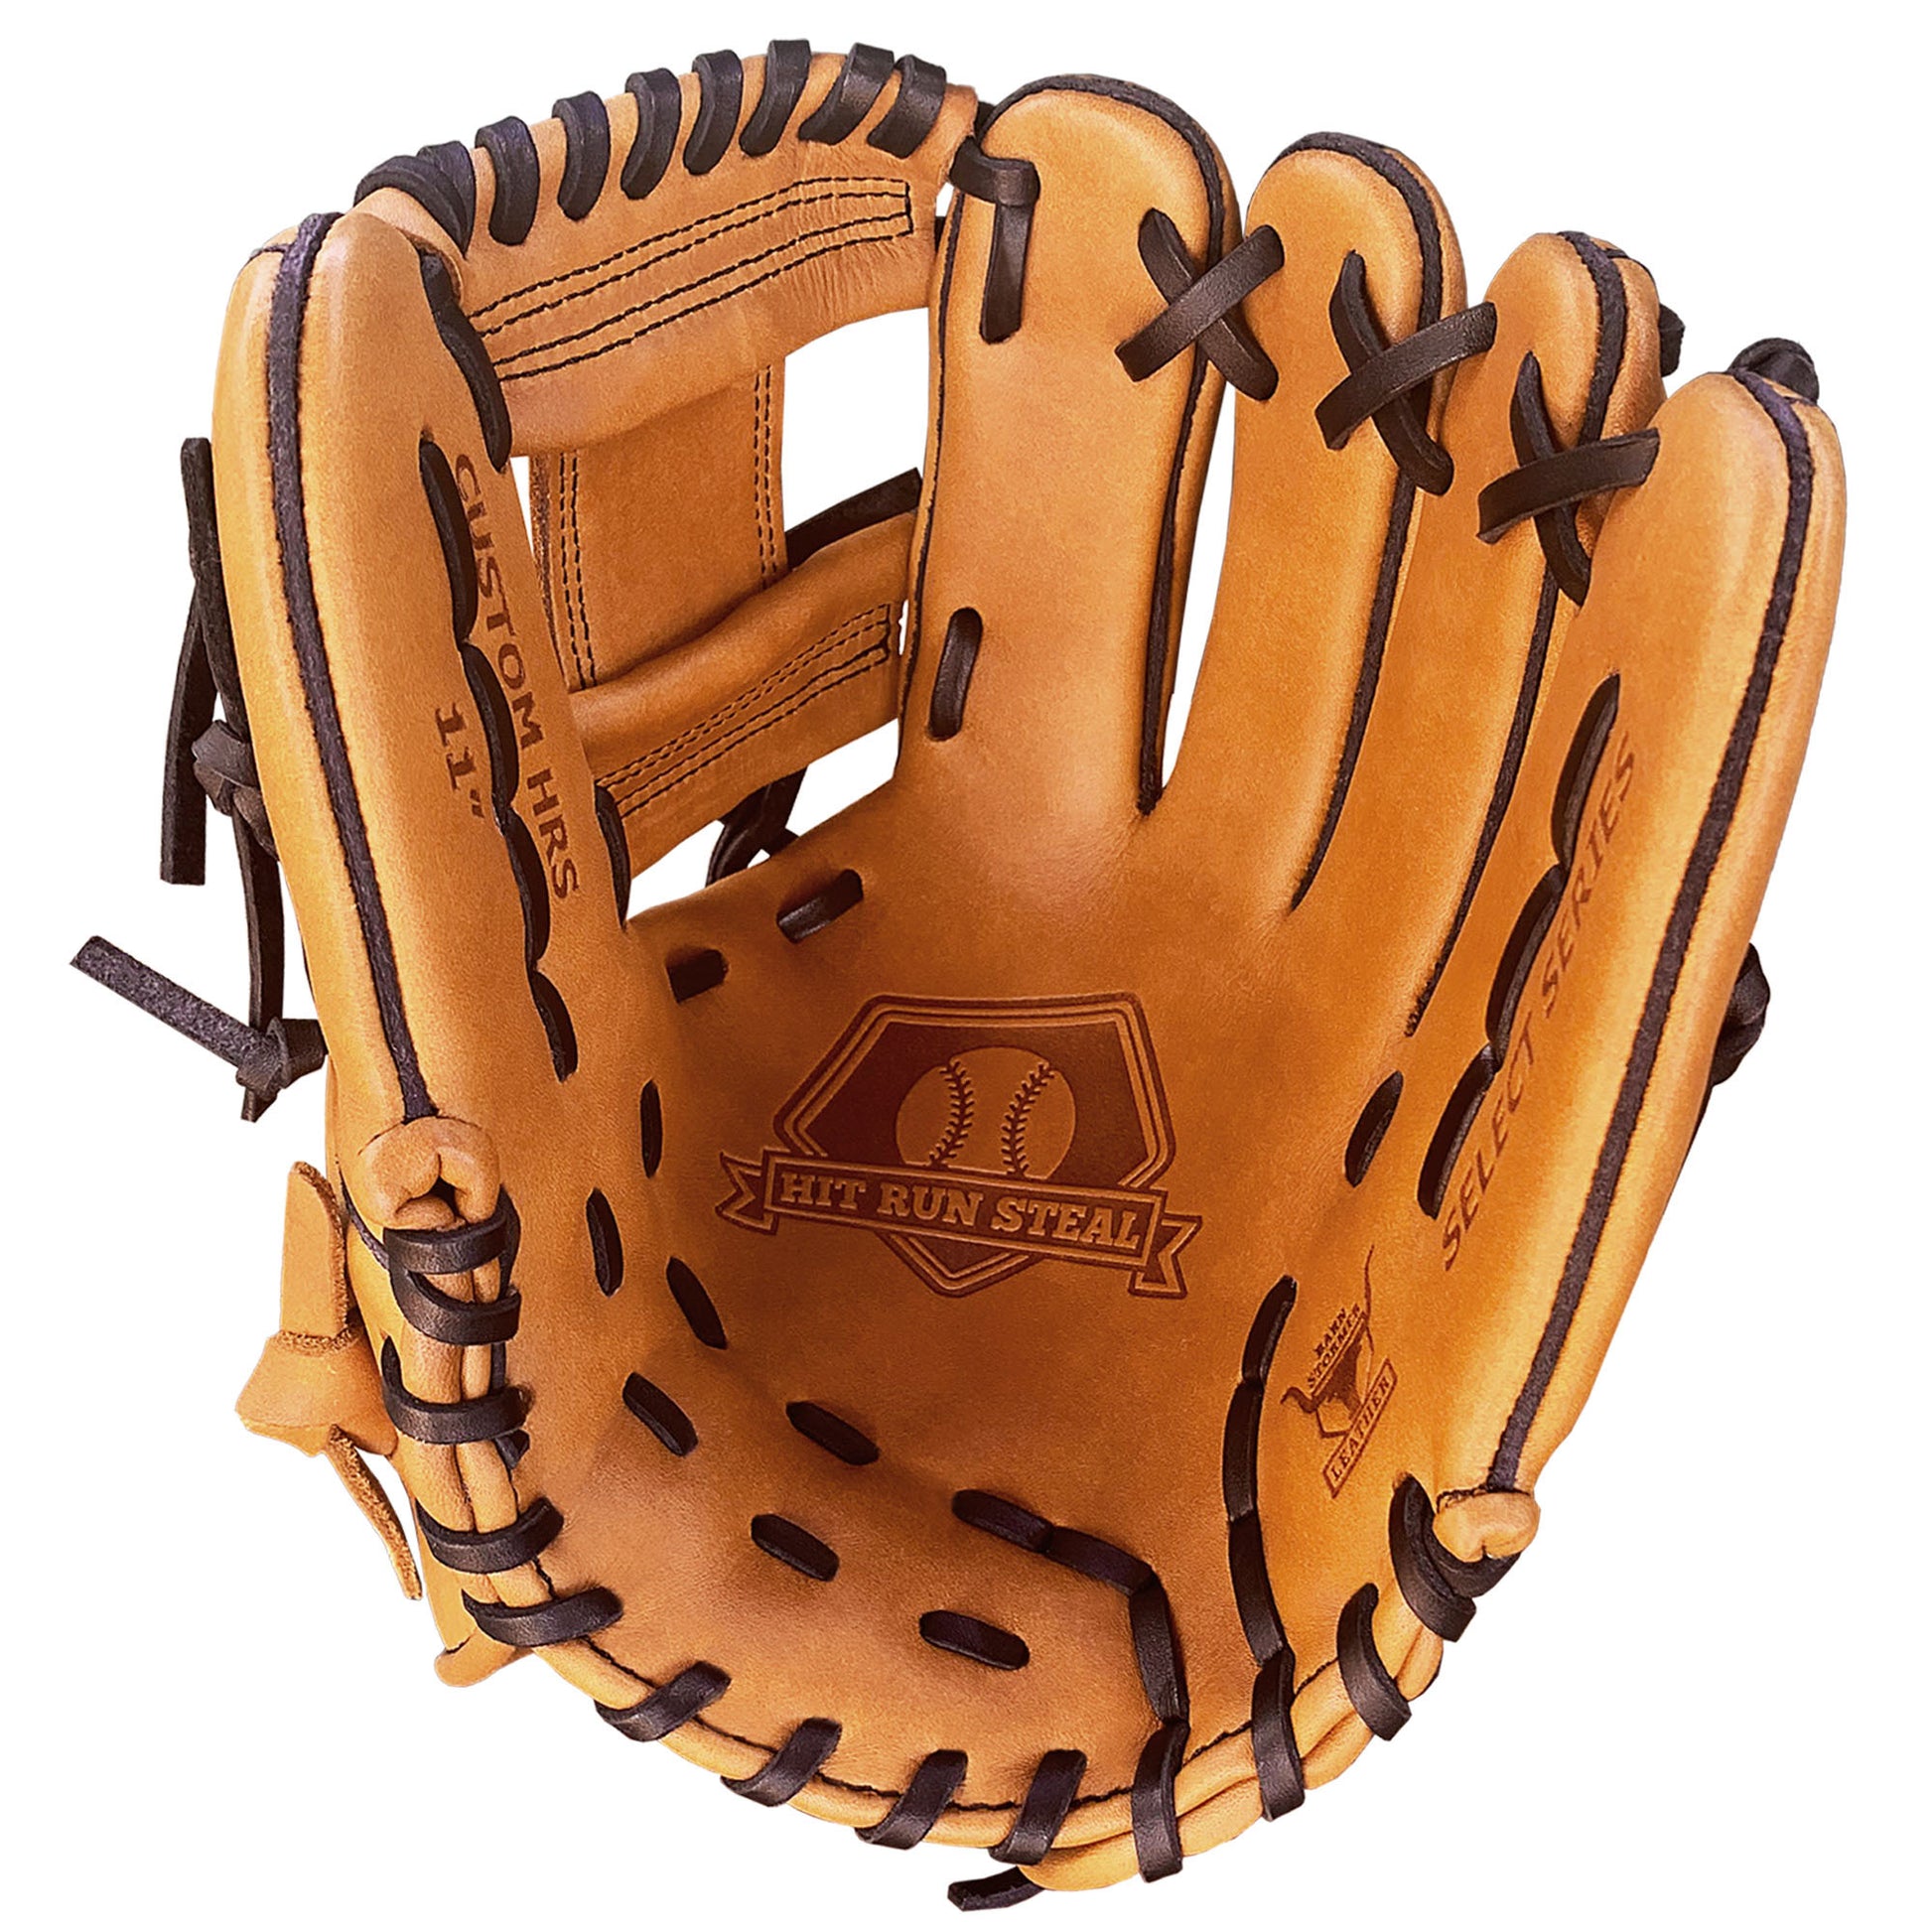 Custom Baseball Glove - Hit Run Steal